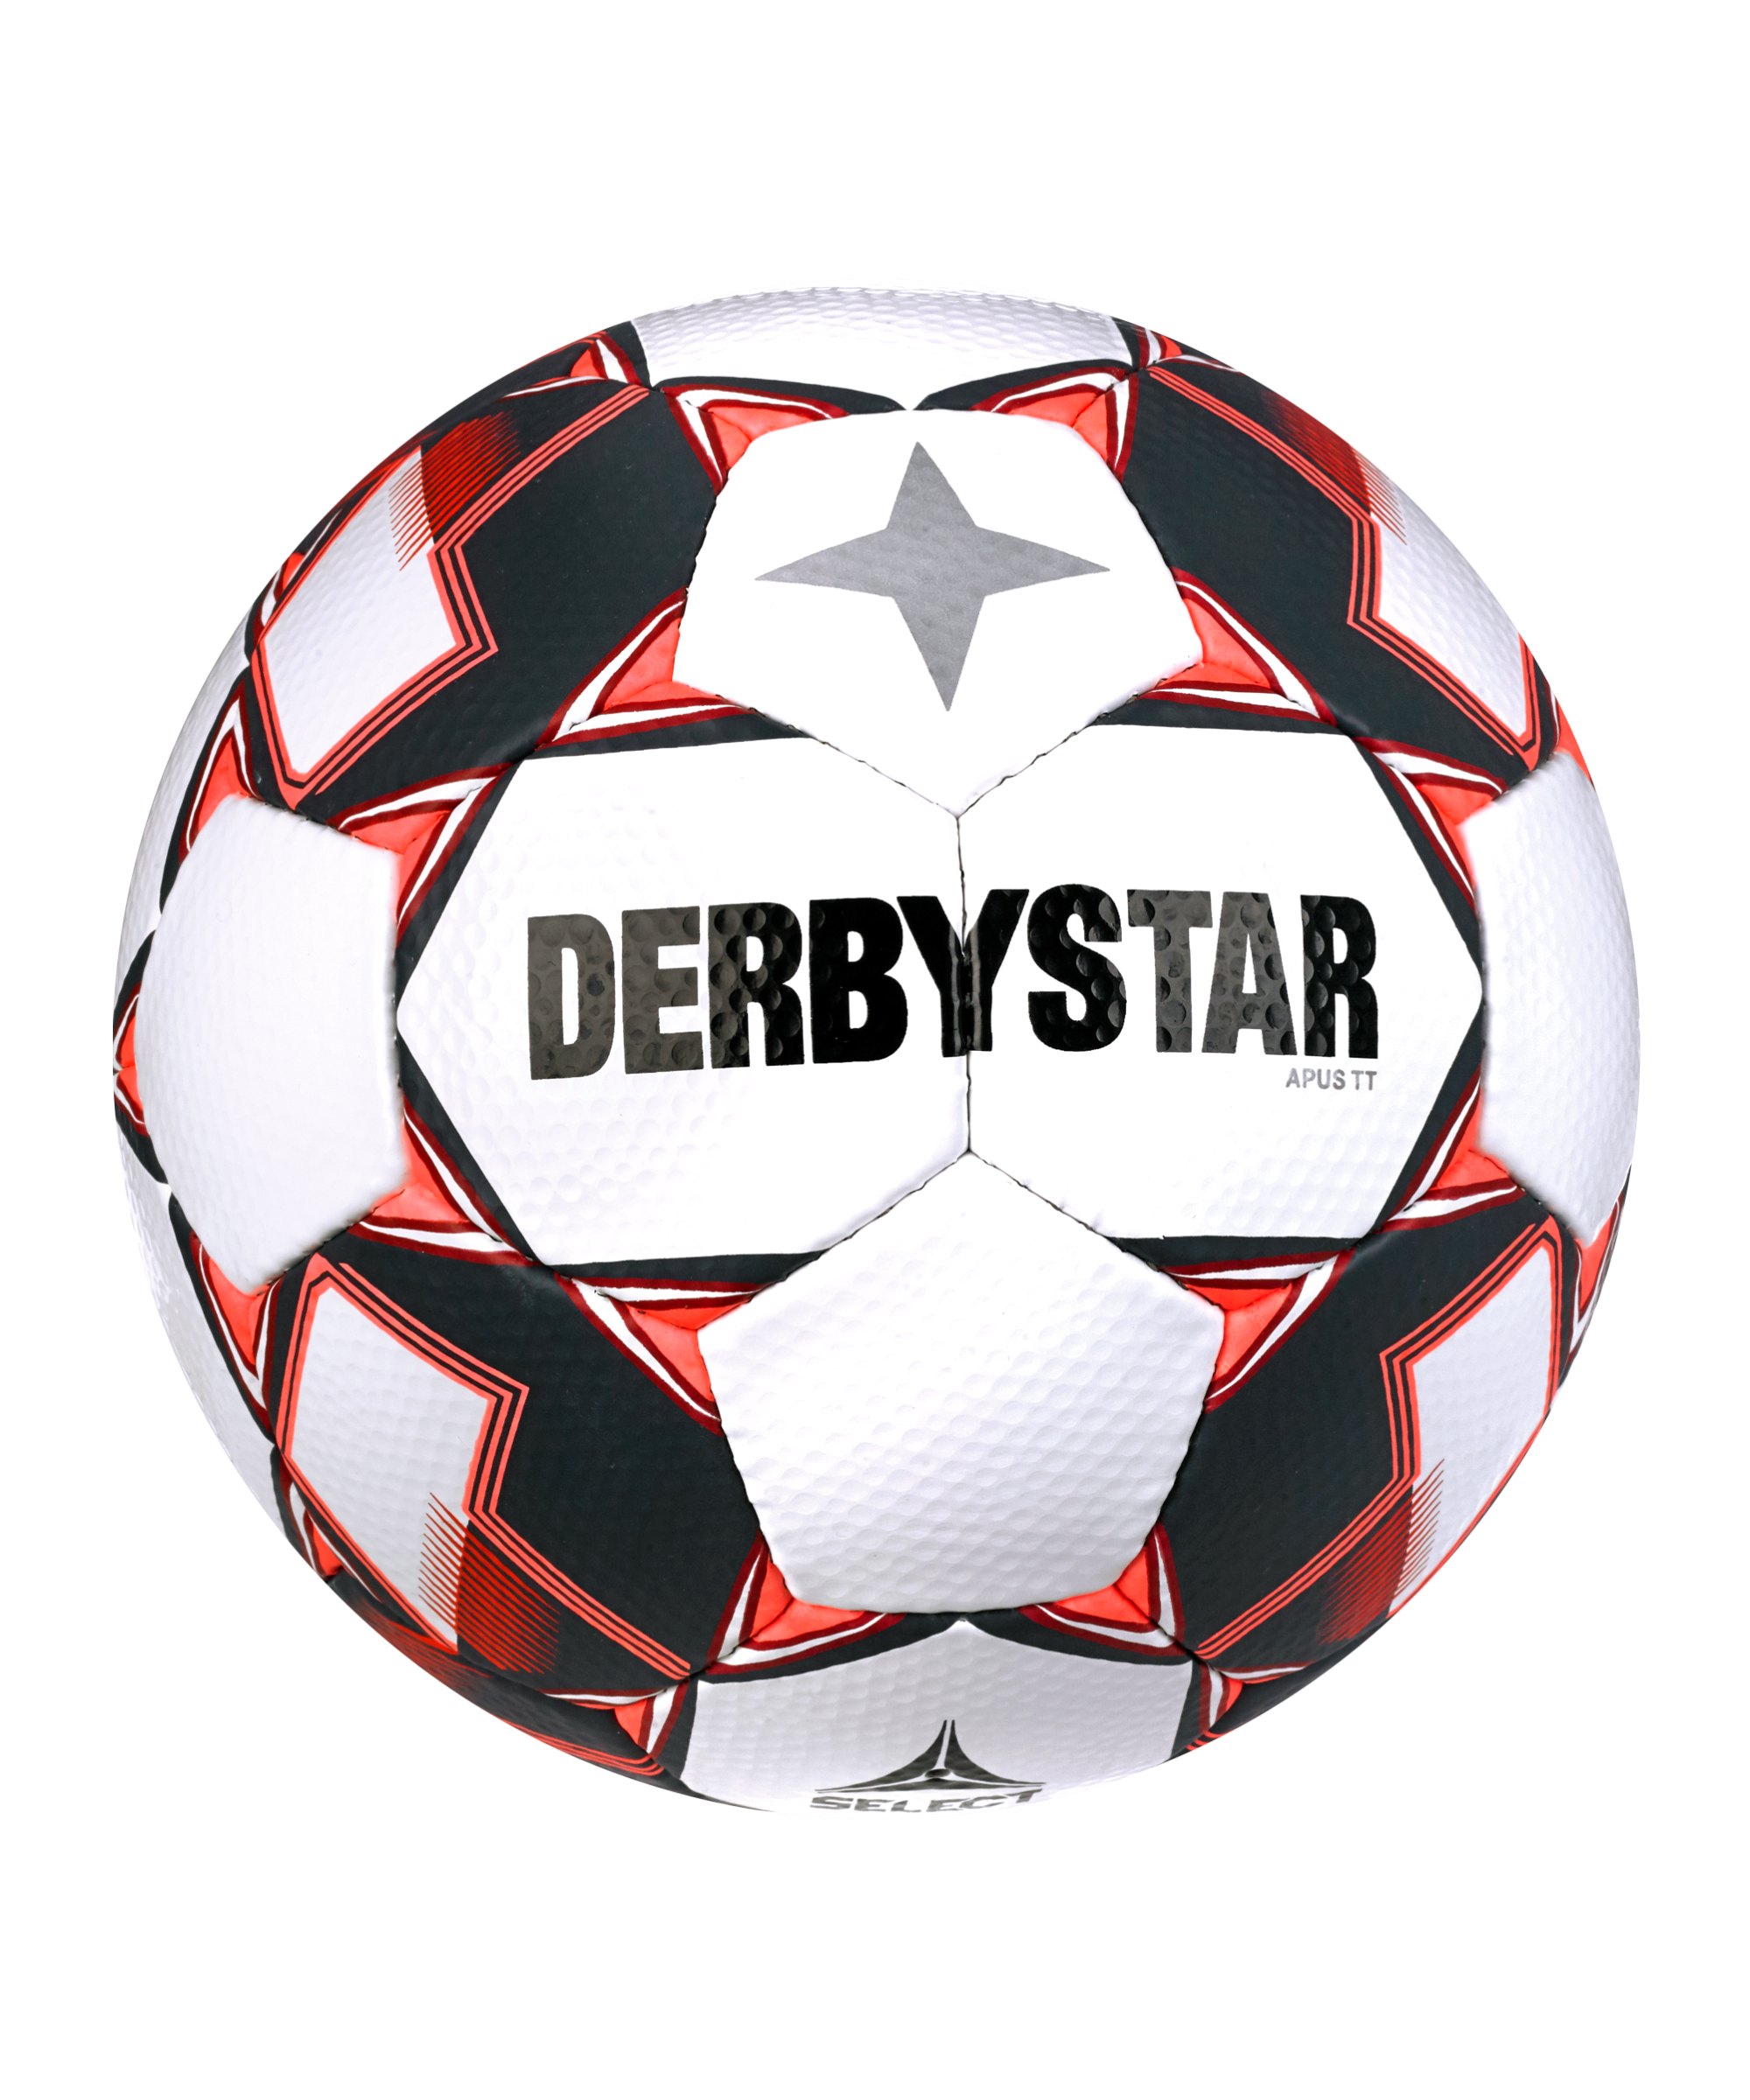 Derbystar Apus TT v23 Trainingsball Weiss Rot F130 - weiss